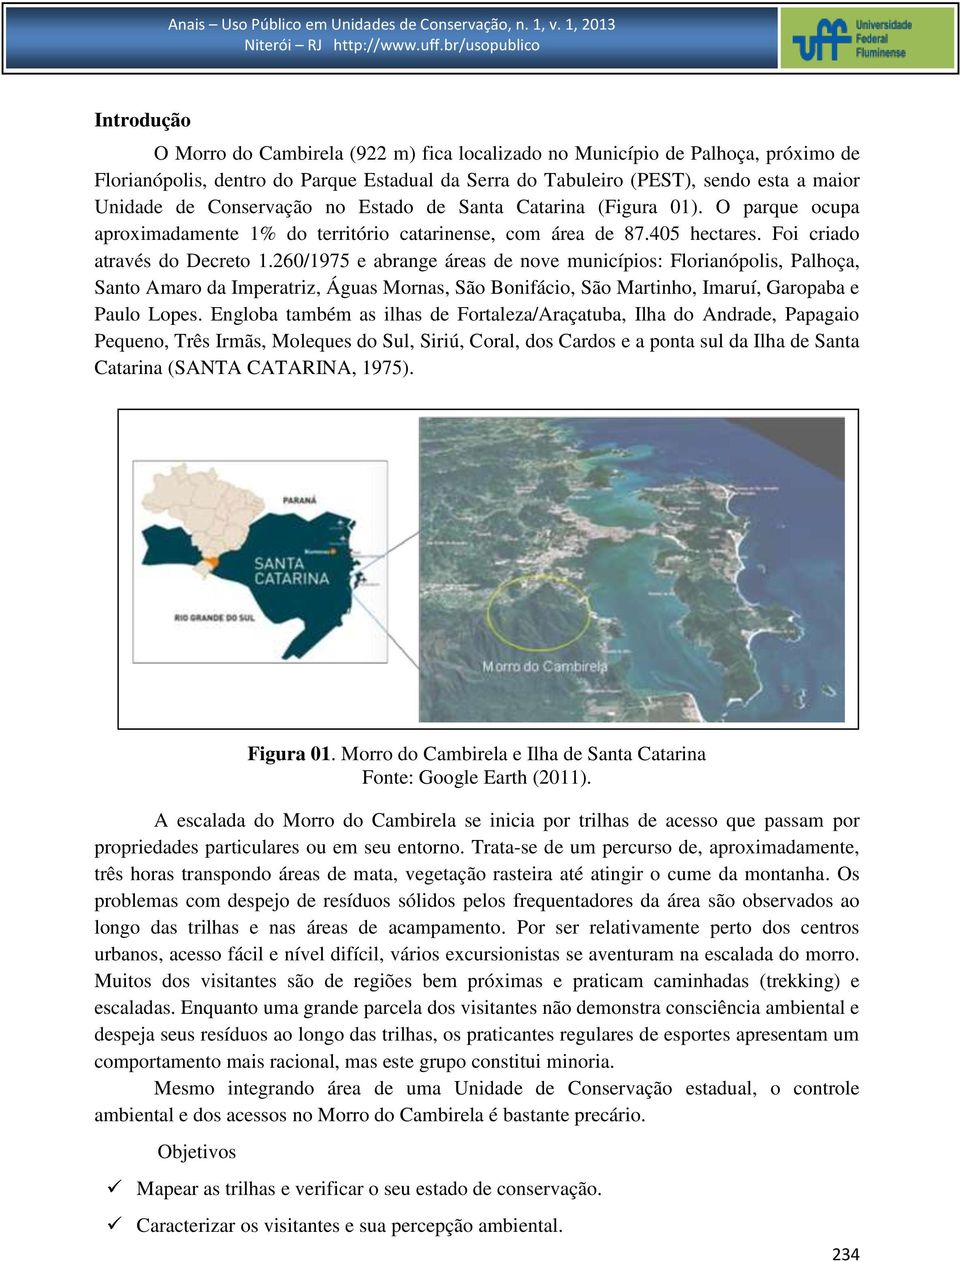 260/1975 e abrange áreas de nove municípios: Florianópolis, Palhoça, Santo Amaro da Imperatriz, Águas Mornas, São Bonifácio, São Martinho, Imaruí, Garopaba e Paulo Lopes.